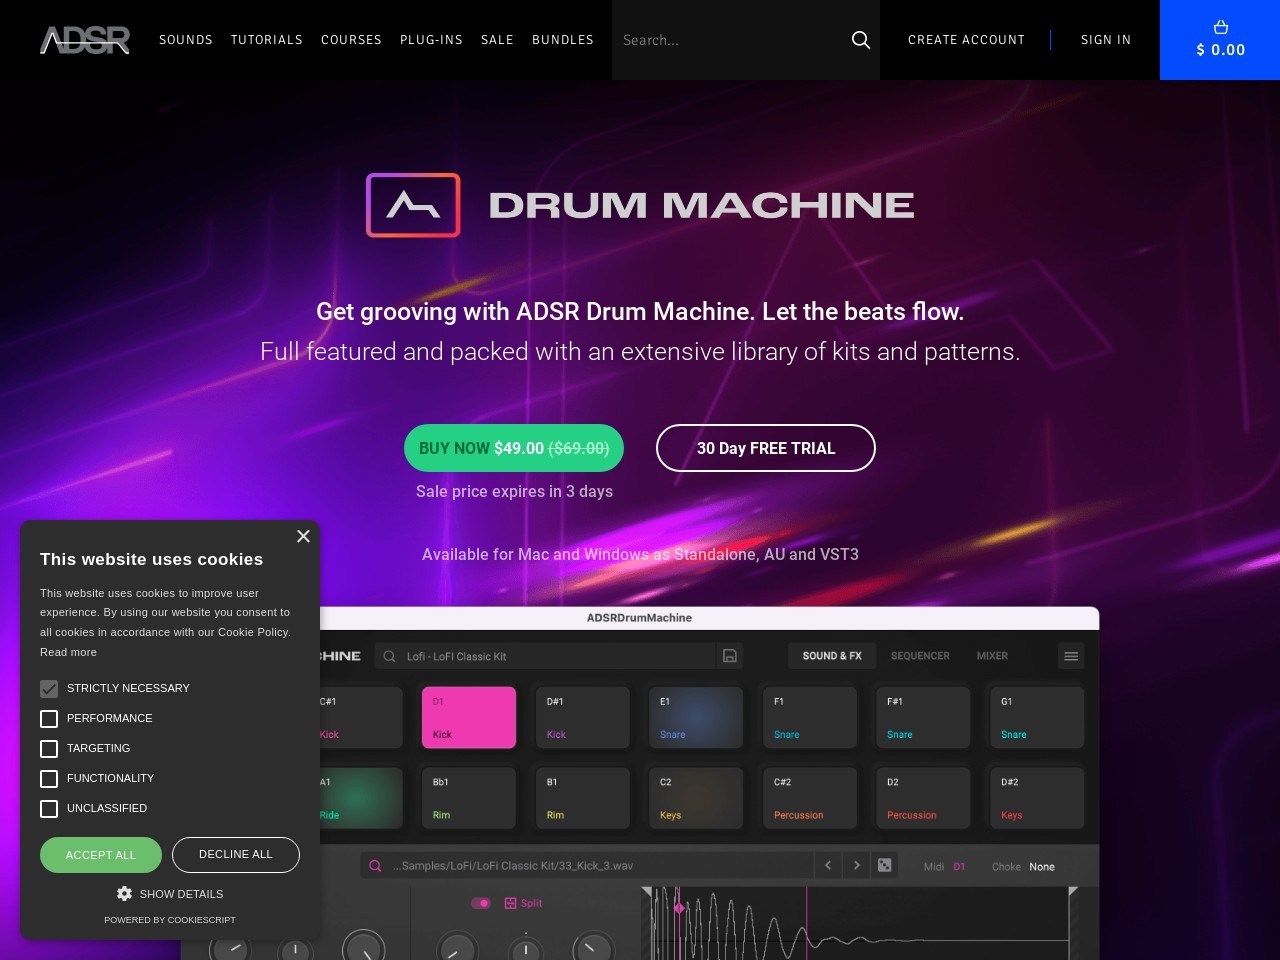 ADSR Drum Machine - Let The Beats Flow - ADSR Sounds